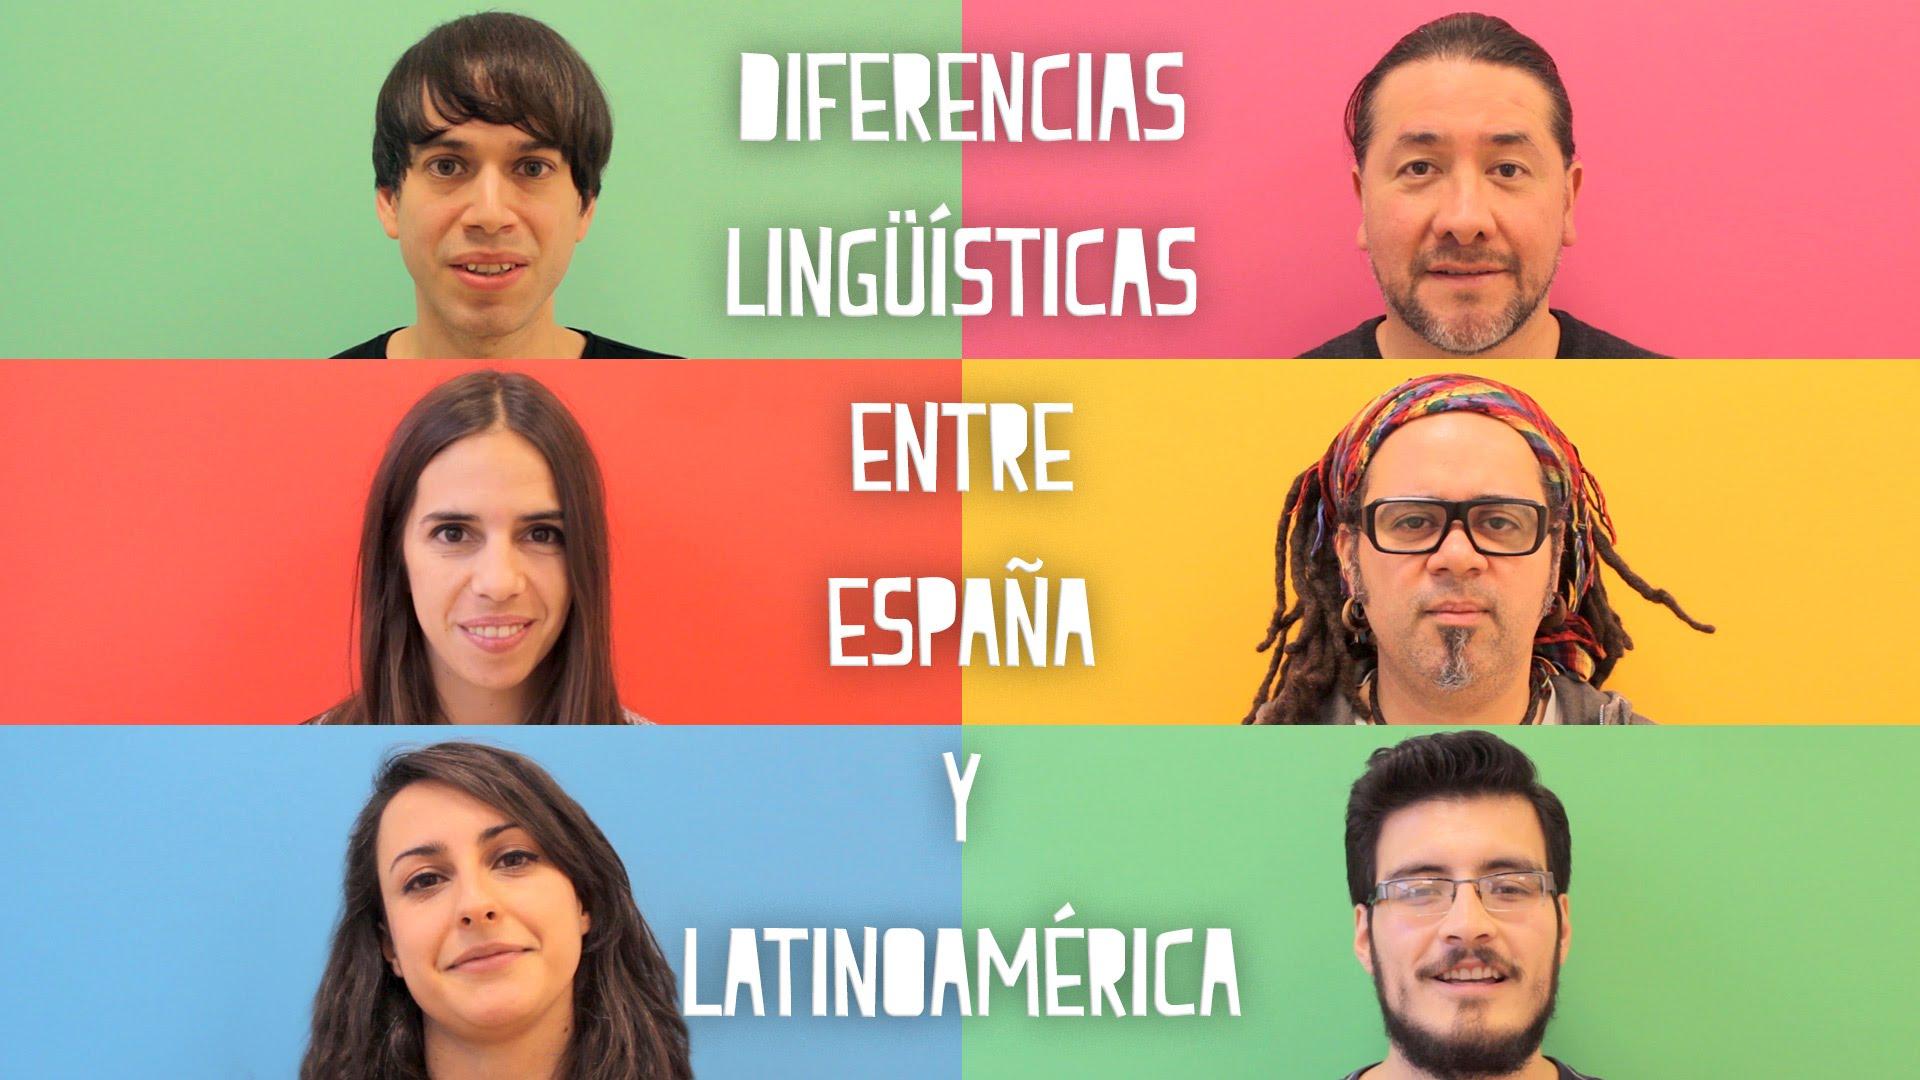 南美的西班牙语和西班牙的西班牙语很不同吗